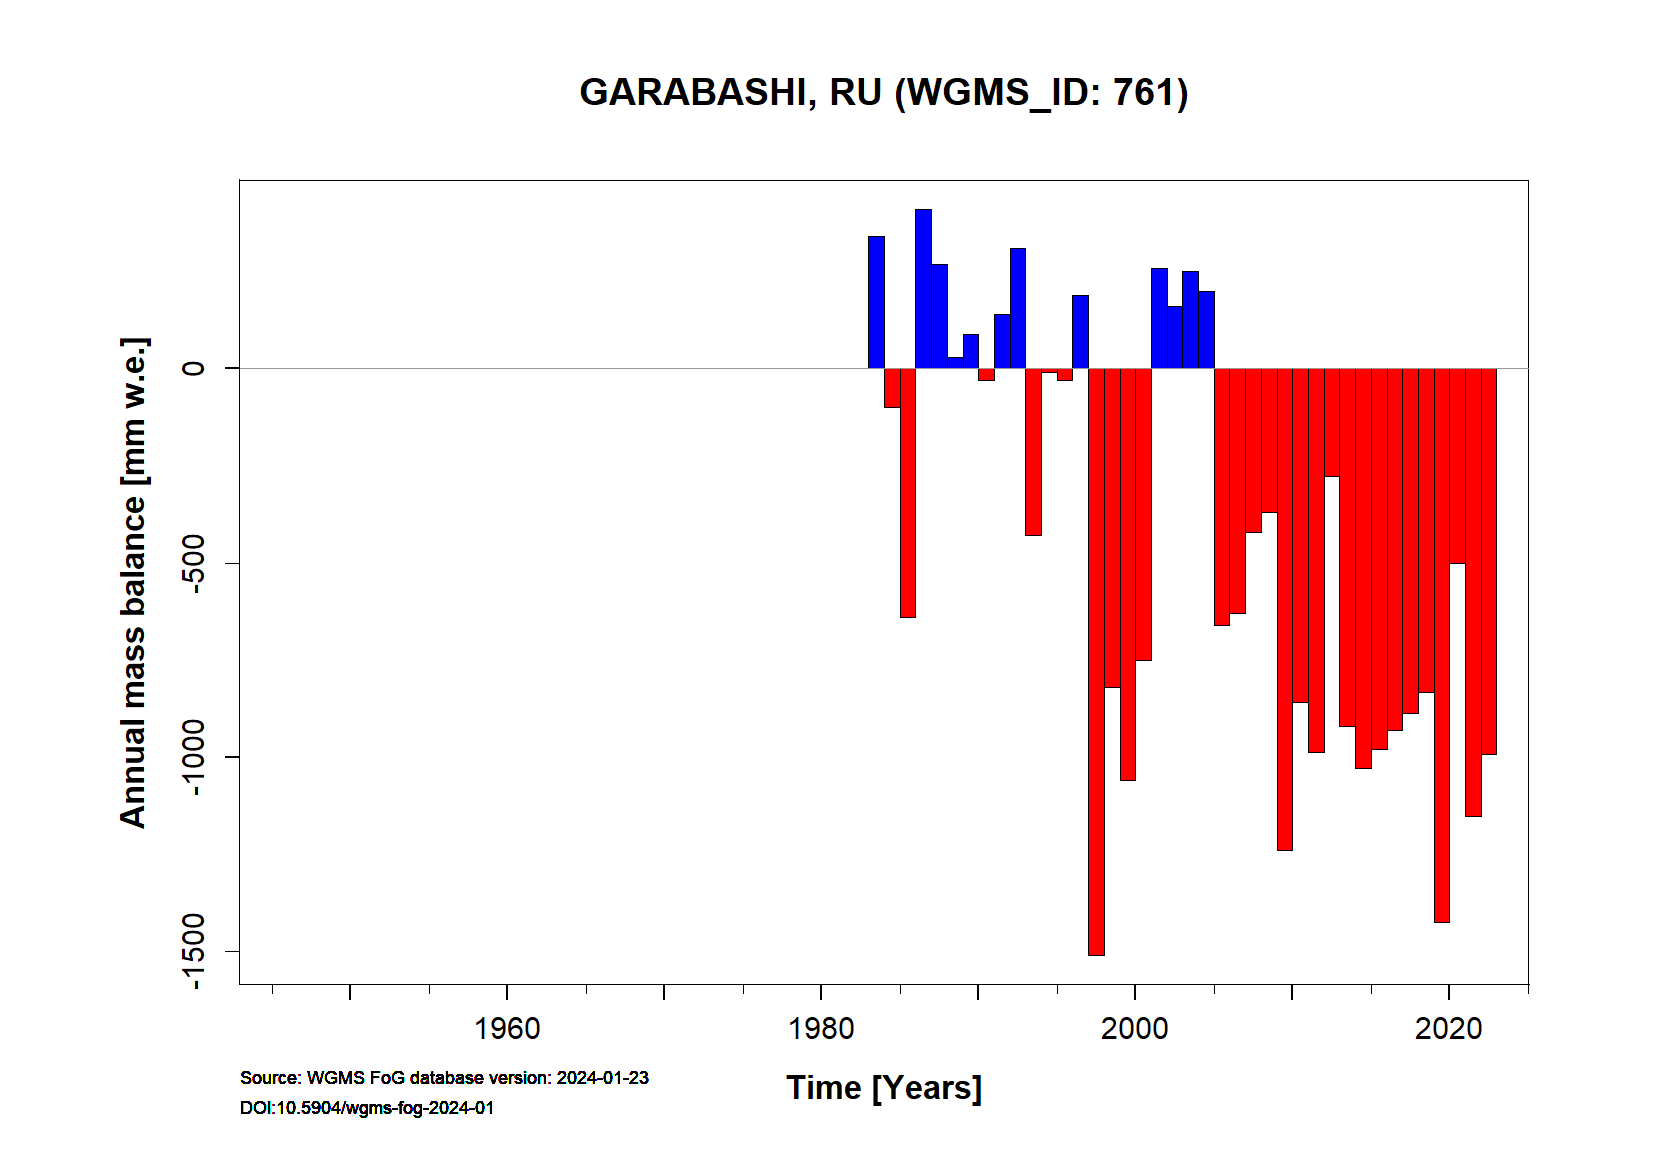 Garabashi glacier Annual Mass Balance (WGMS, 2018)